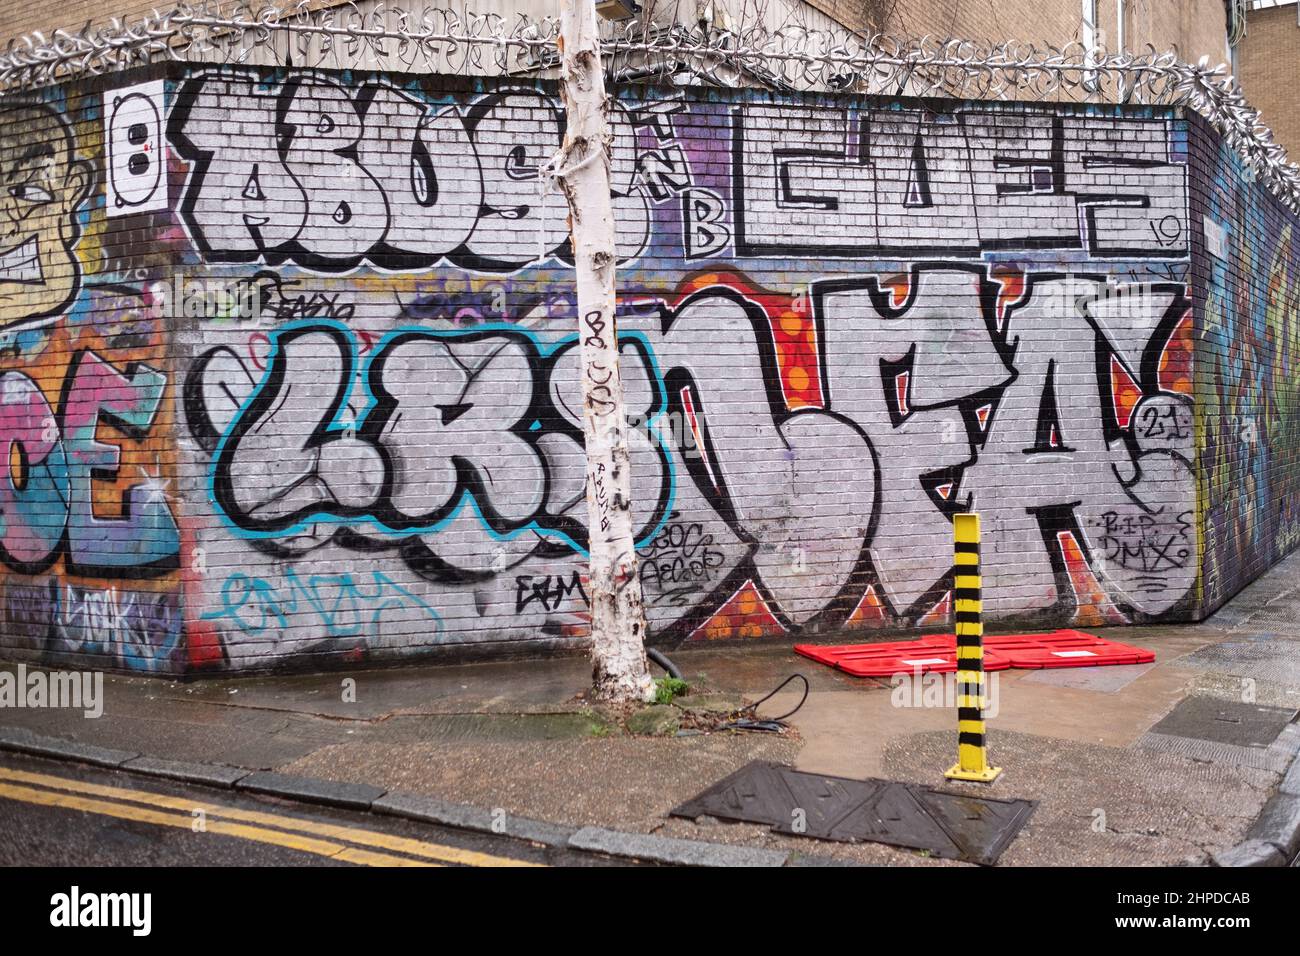 Graffiti all'angolo tra Gray Eagle Street e Quaker Street, Spitalfields E1 London UK. Questa zona è un focolaio di Street art. Foto Stock